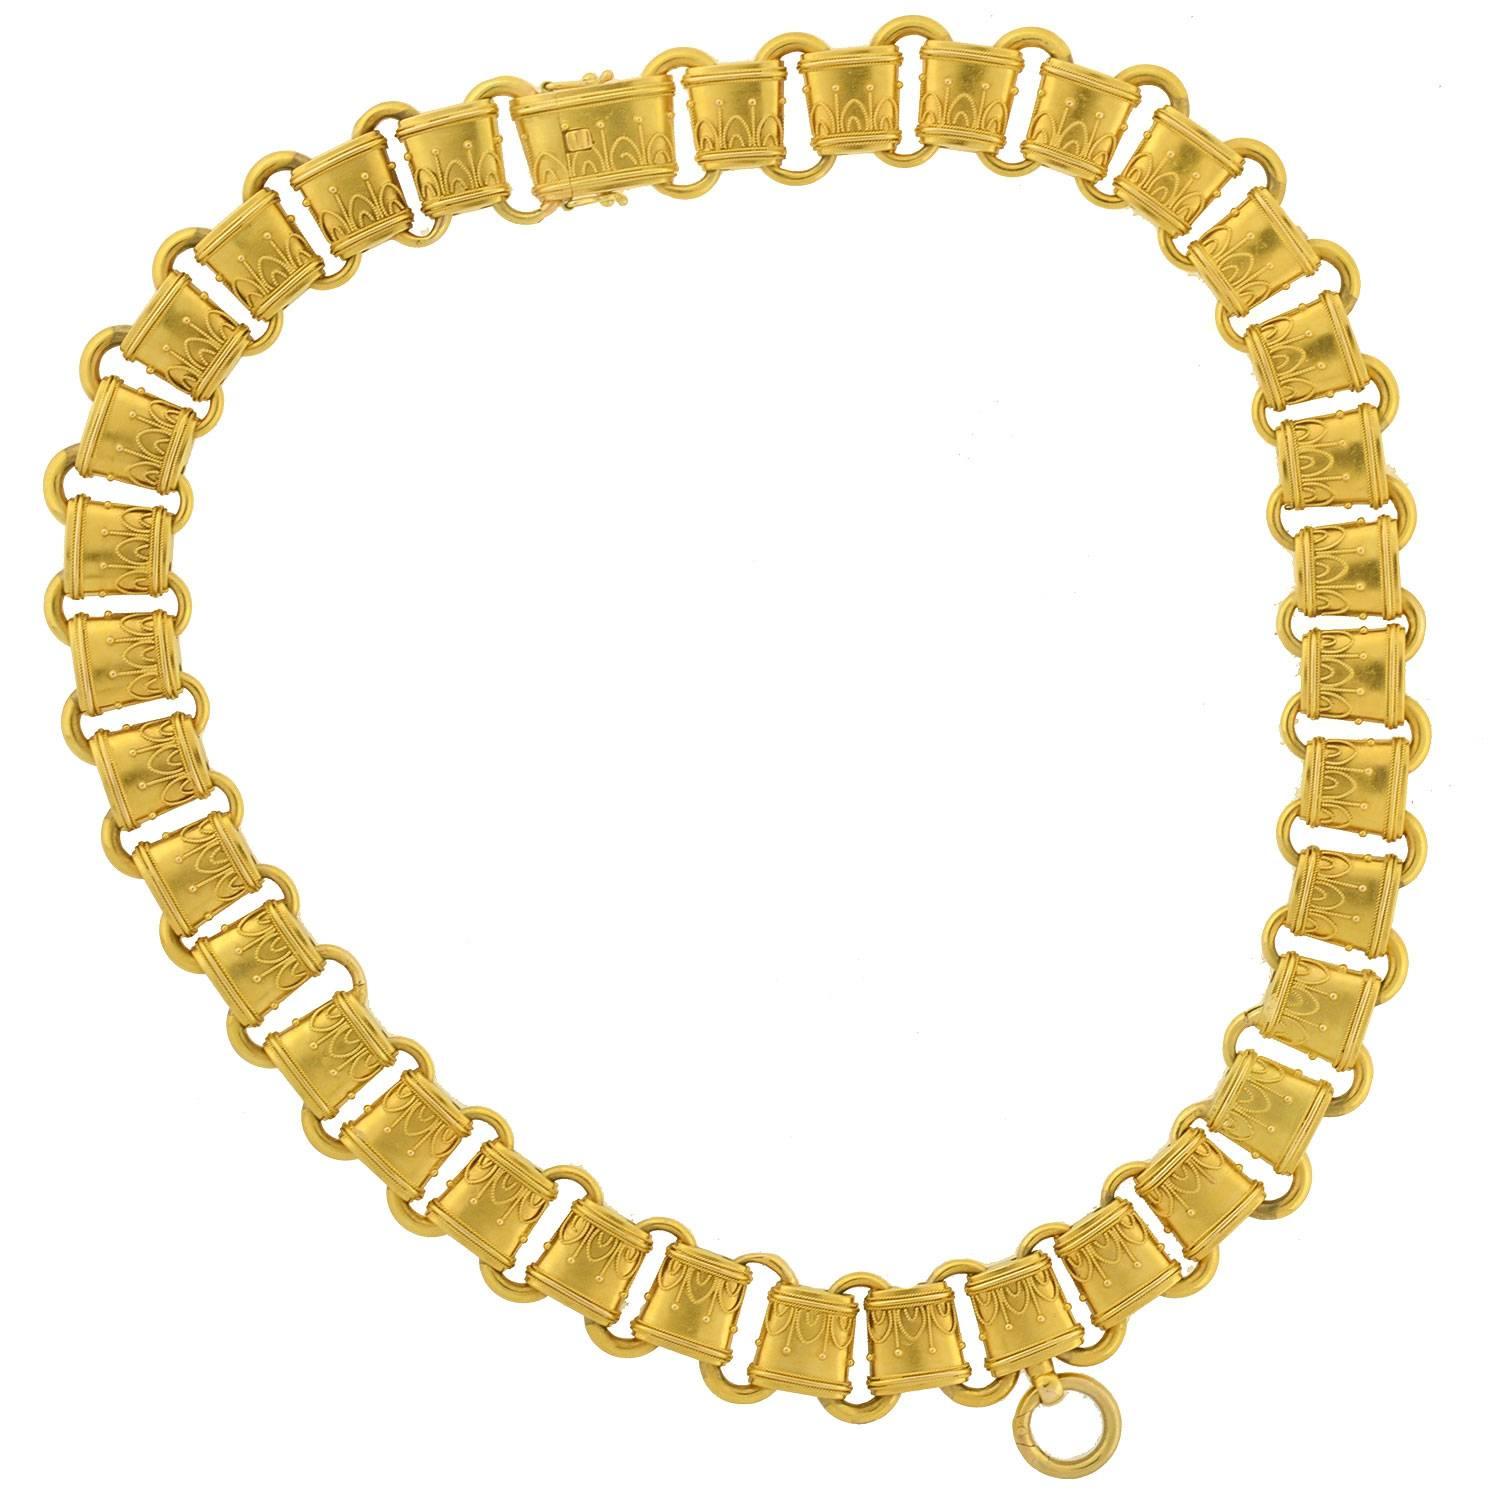 Etruskische Gliederkette aus Gold, viktorianisch, verschnörkelt